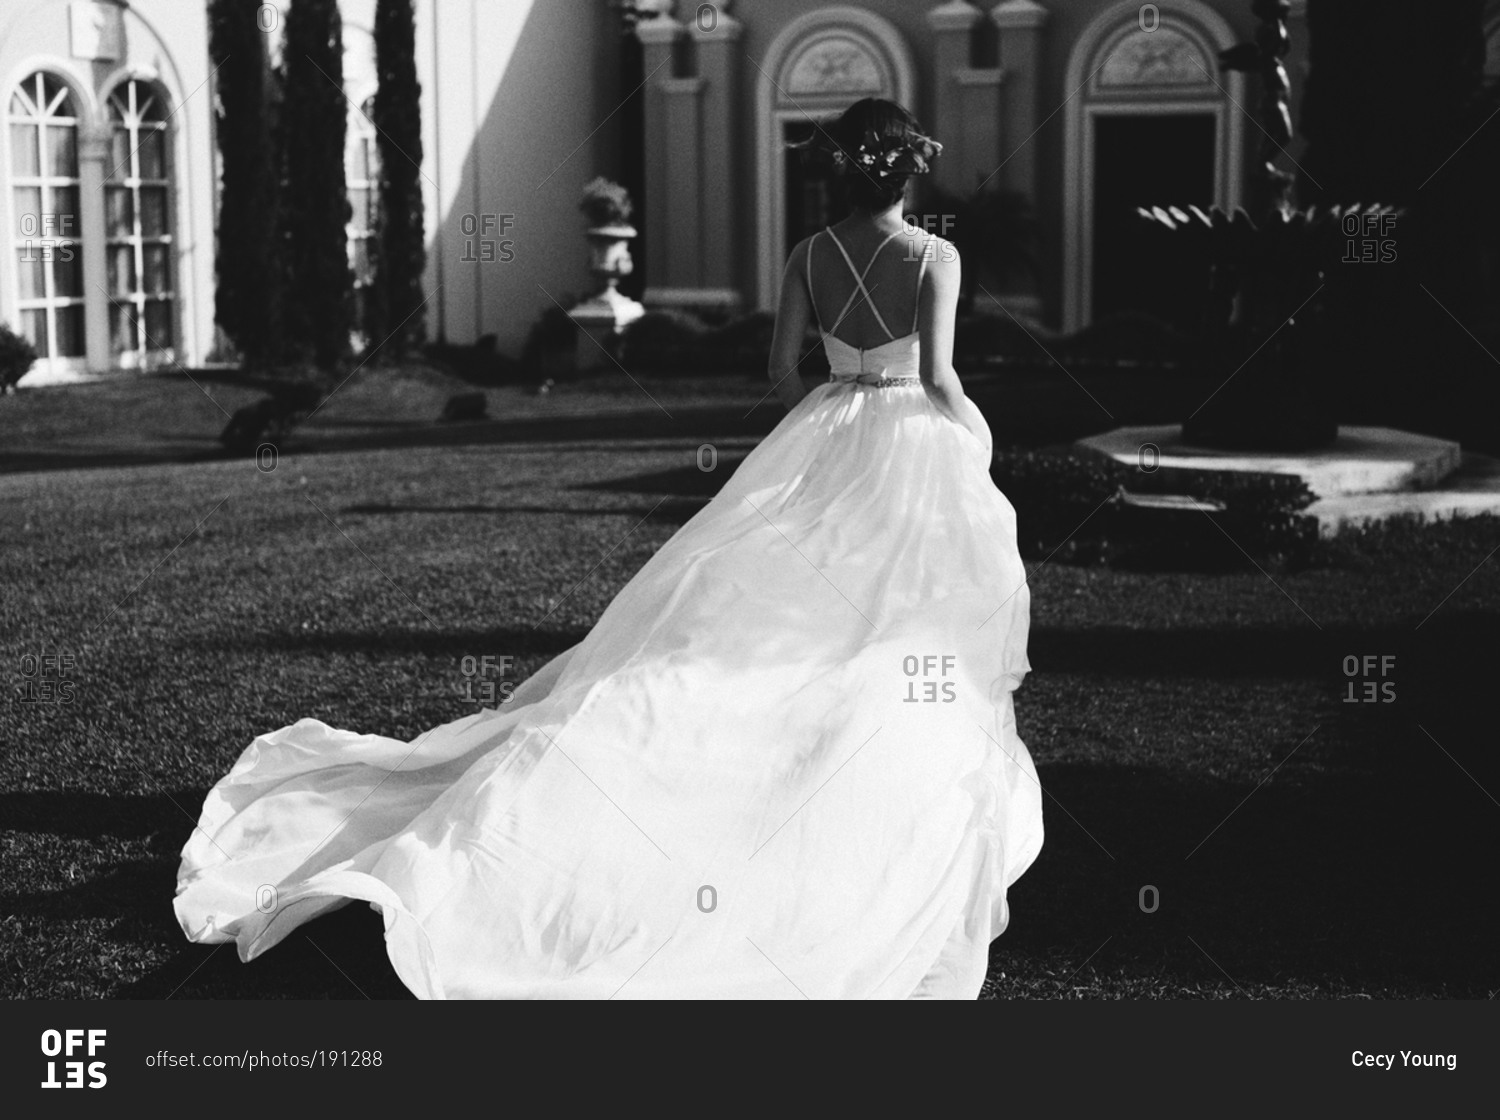 Bride in courtyard in flowing dress